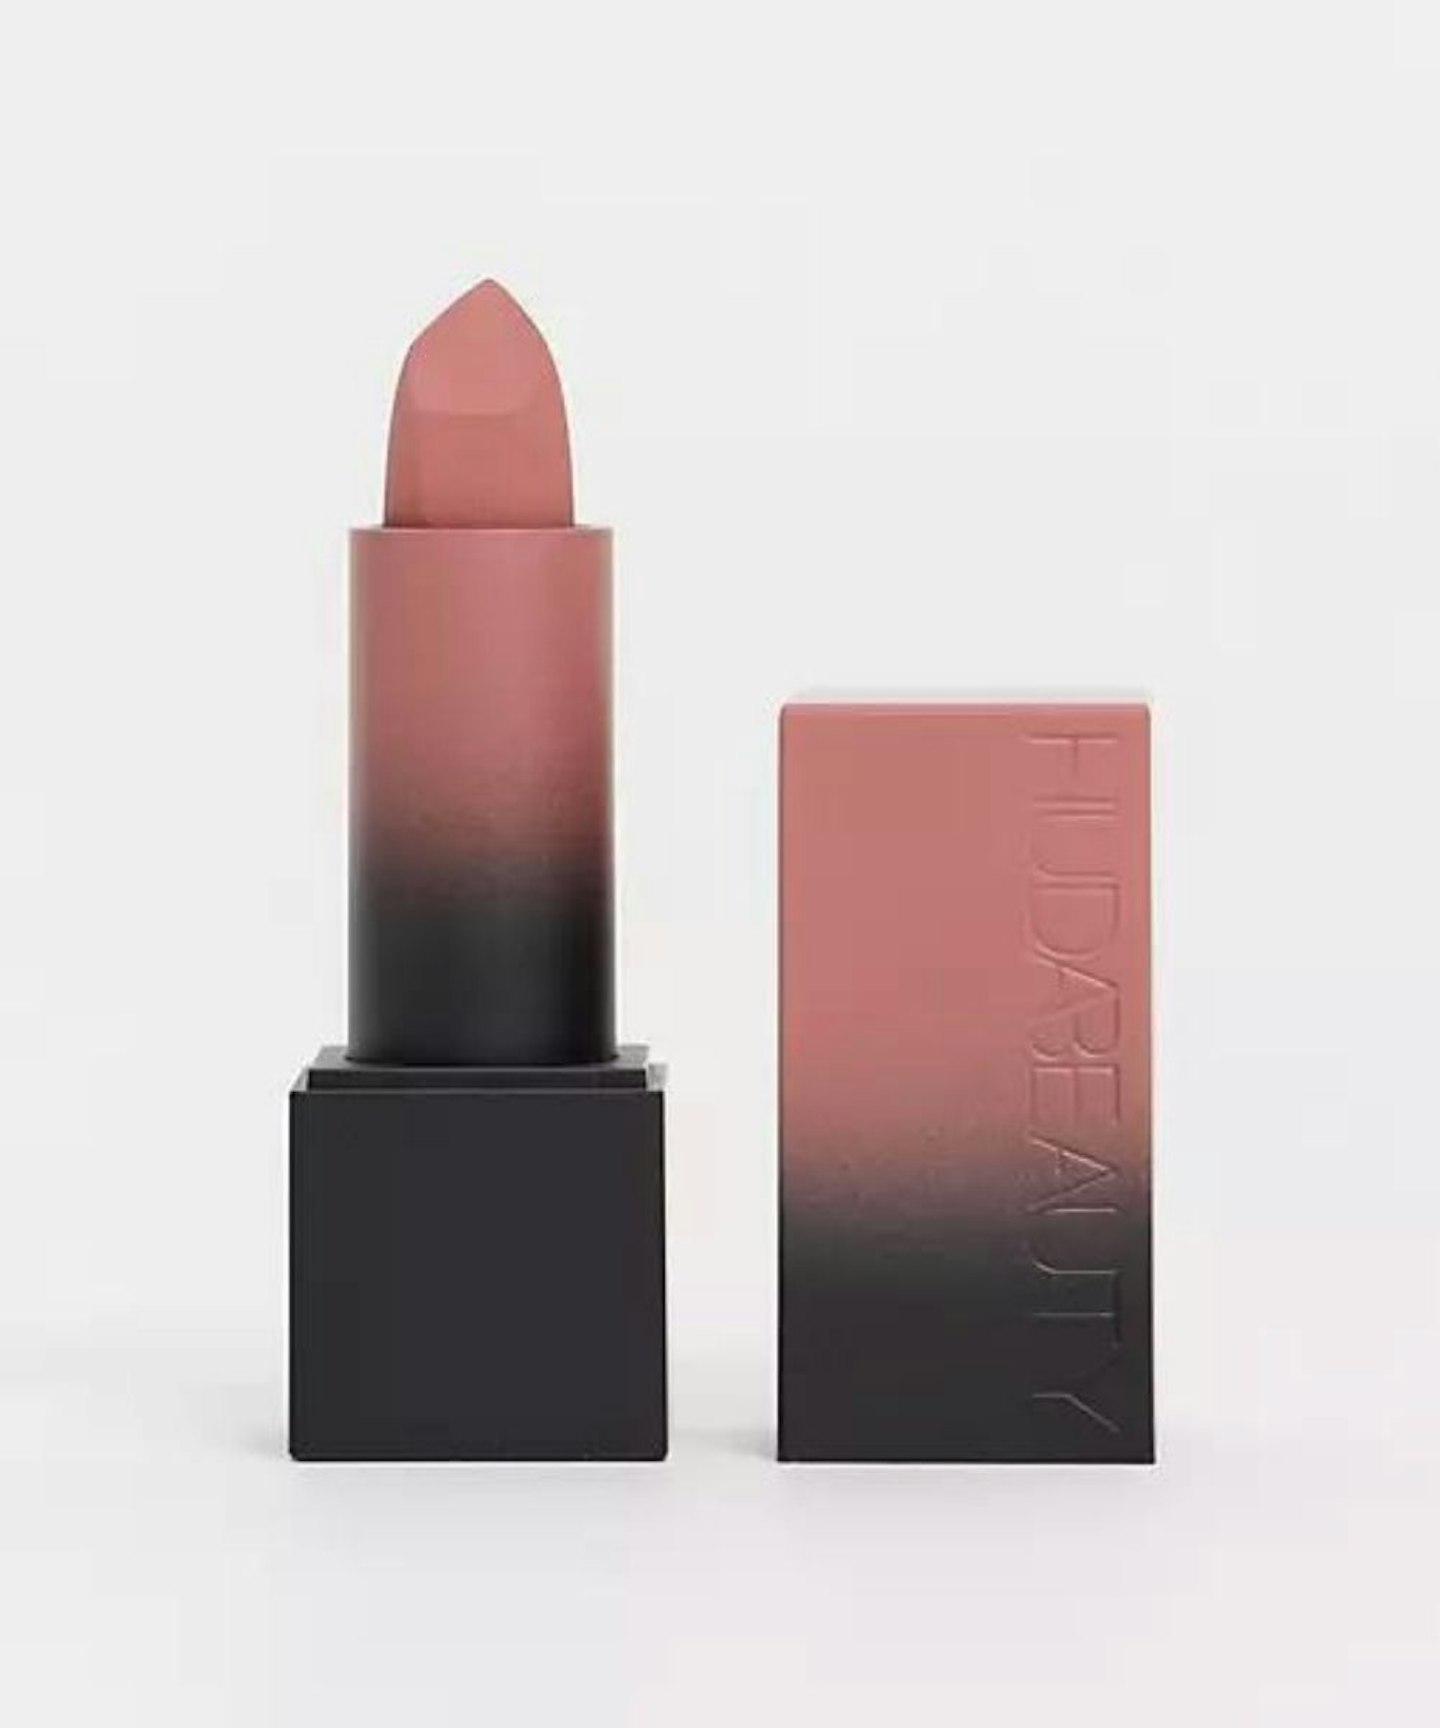 Huda Beauty Power Bullet Matte Lipstick - Girls Trip